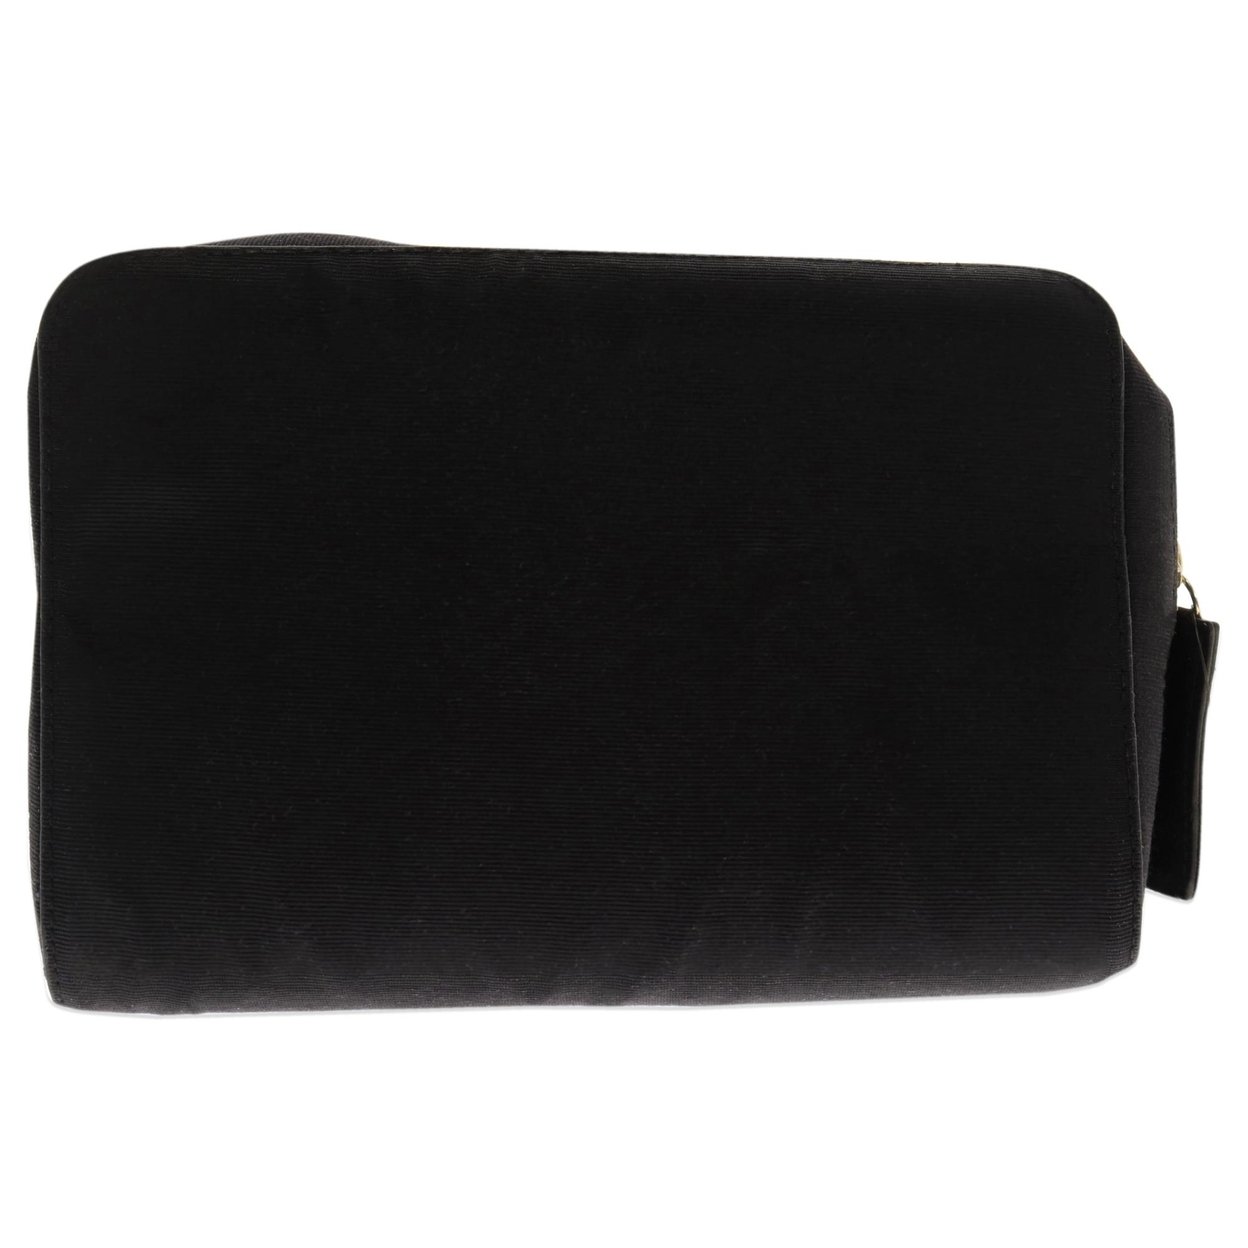 ECSG Cosmetic Bag - Black 1 Pc